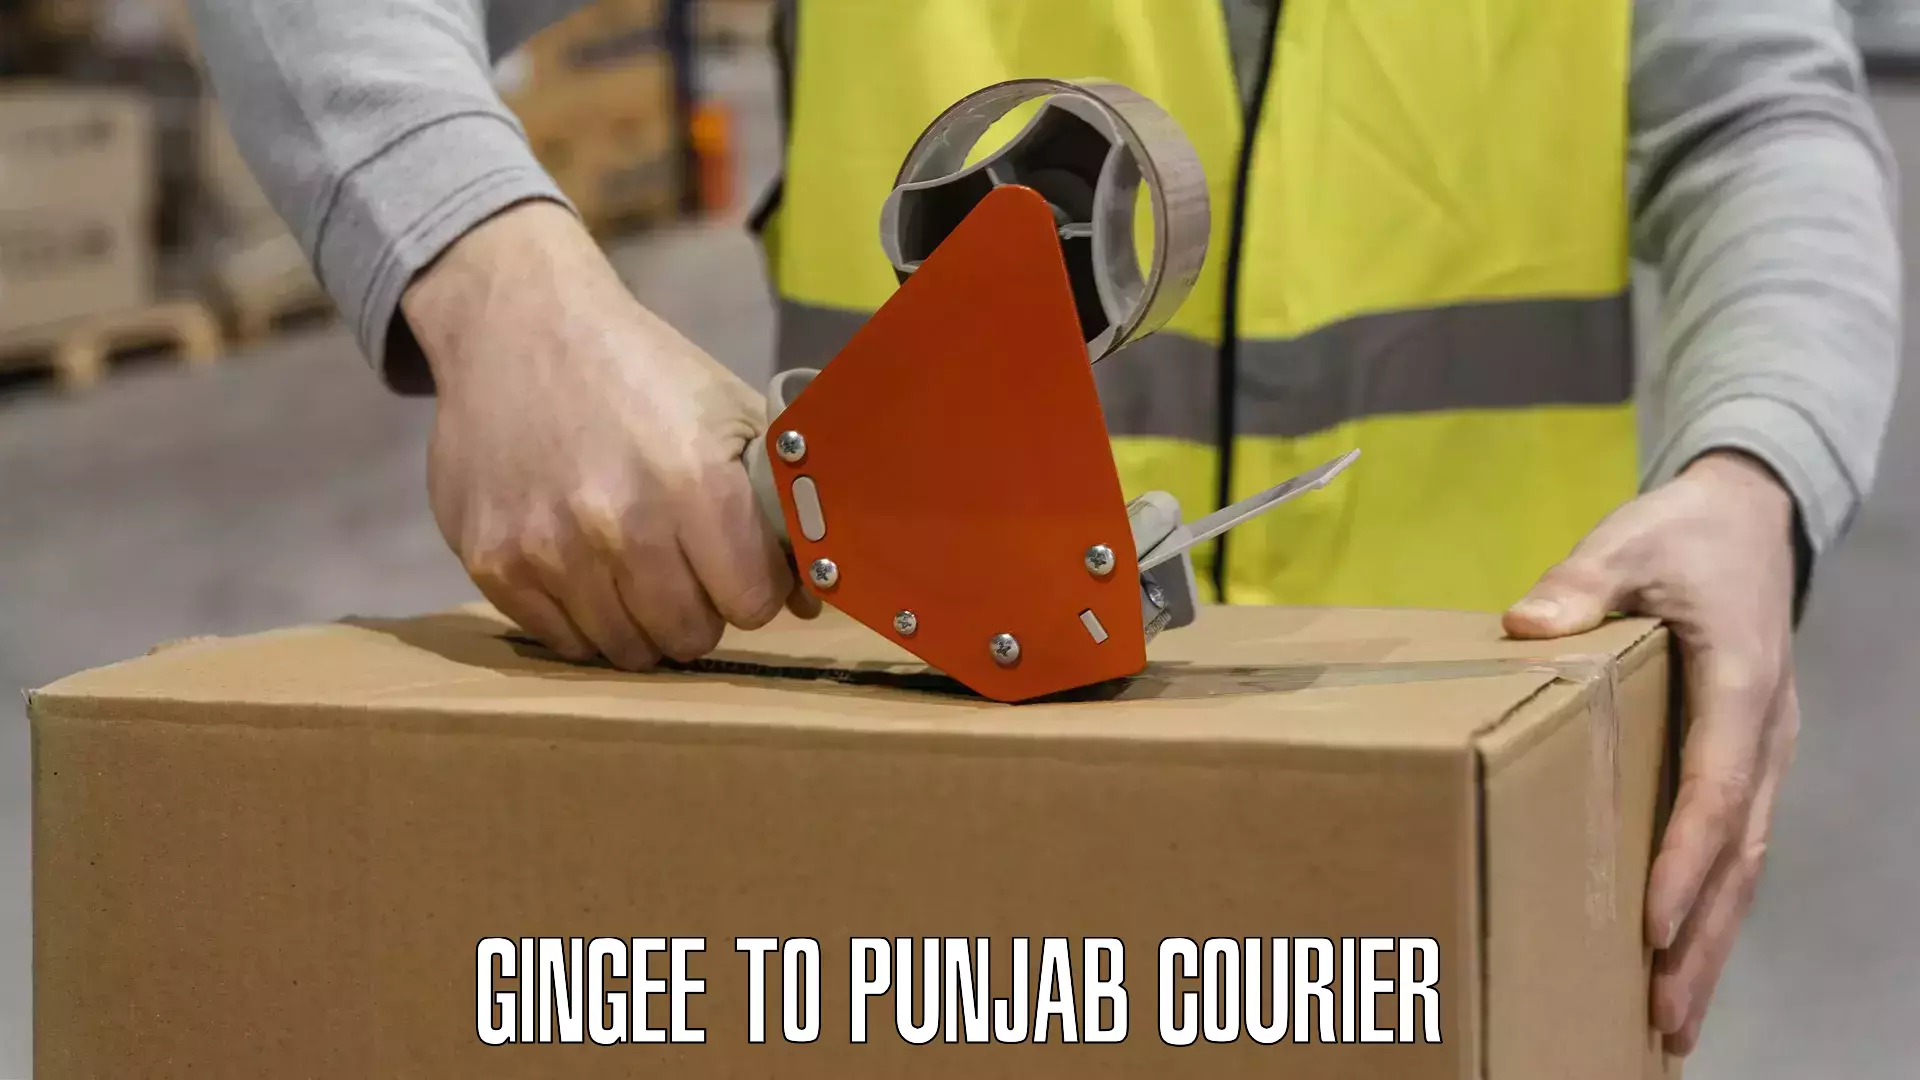 International shipping rates Gingee to Punjab